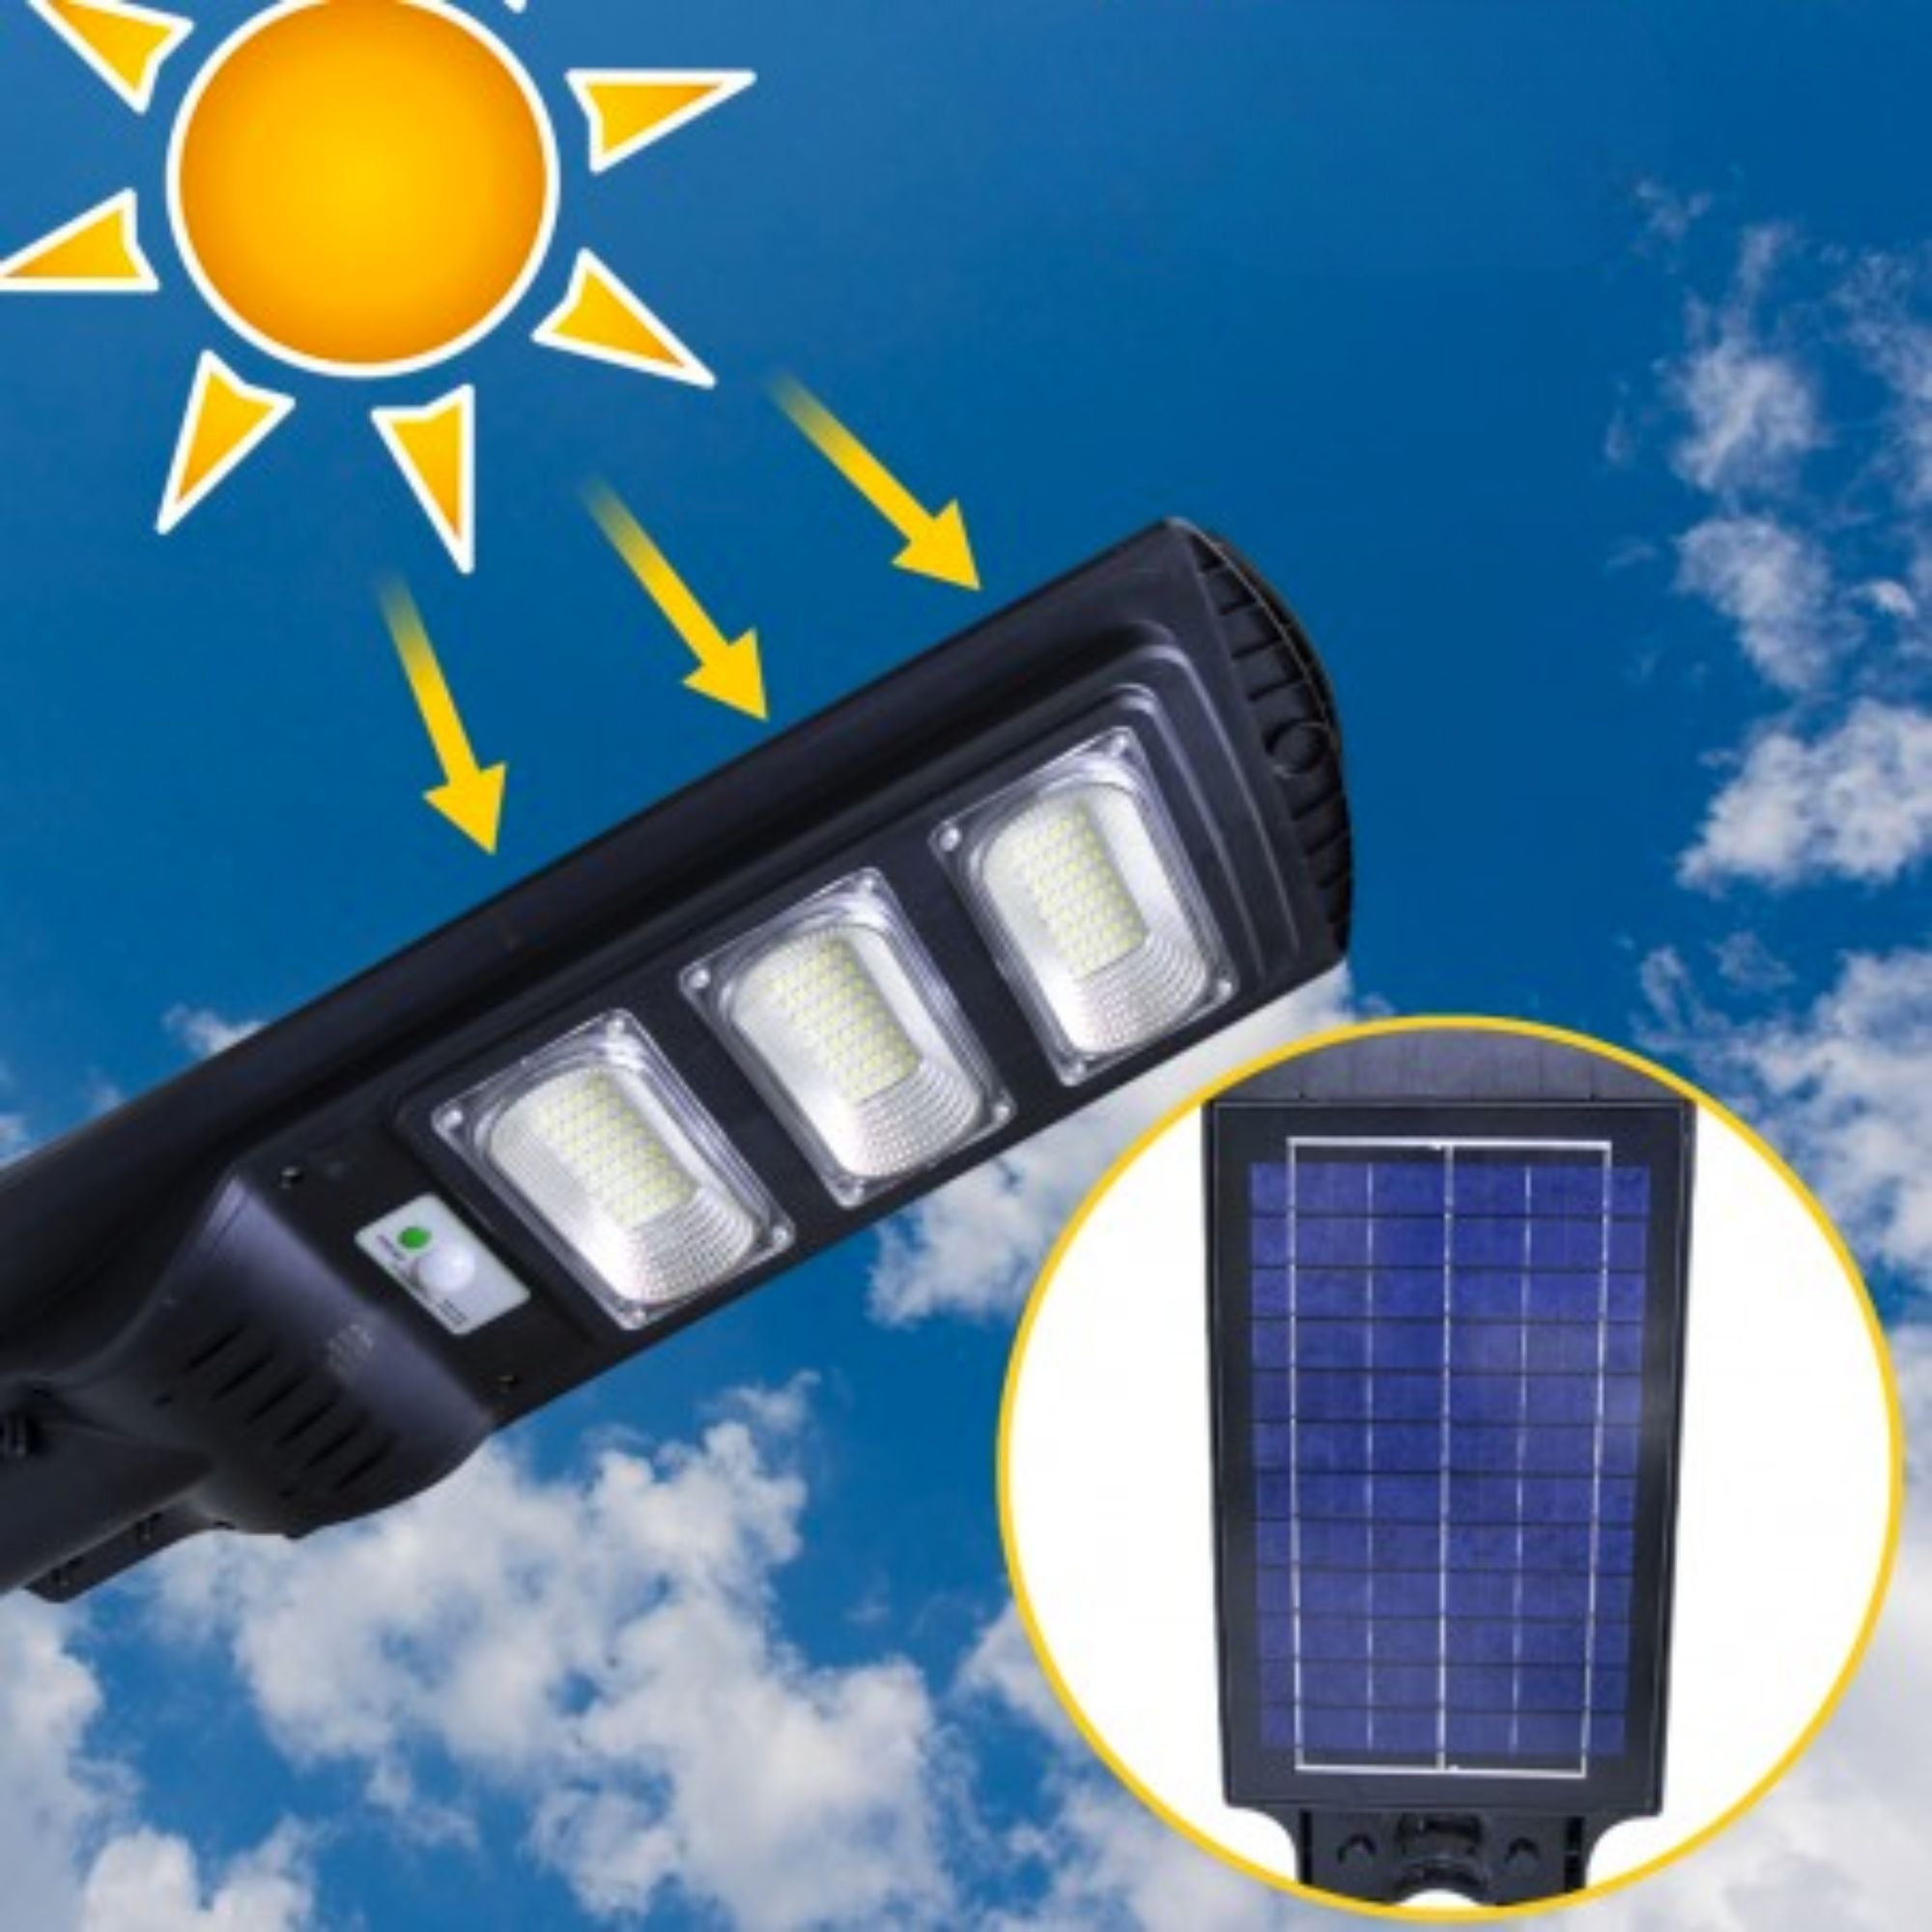 Elettrico-store materiale elettrico online al miglior prezzo - Faro Lampione  Stradale LED Pannello Solare 90W Crepuscolare Luce Bianca